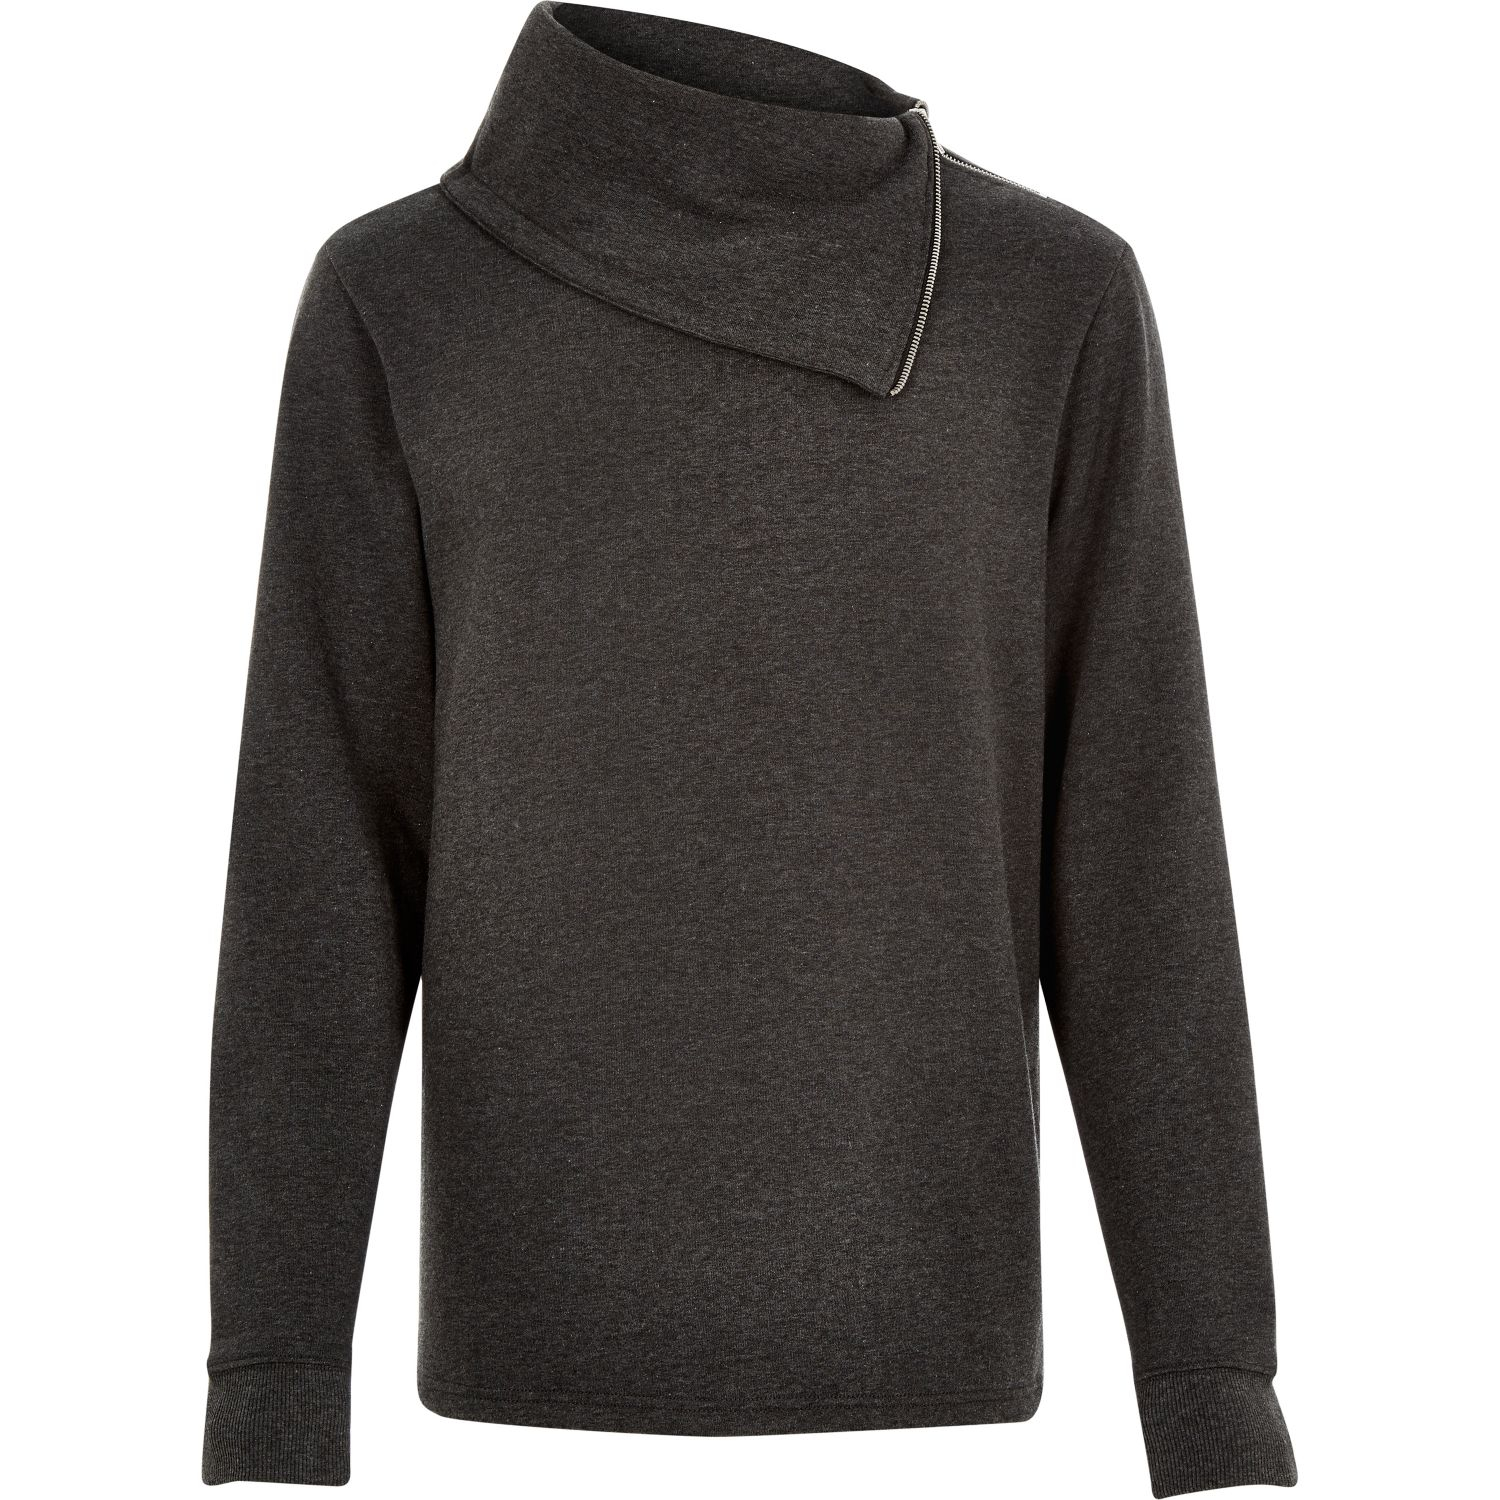 Lyst - River Island Dark Grey Side Neck Zip Sweatshirt in Gray for Men